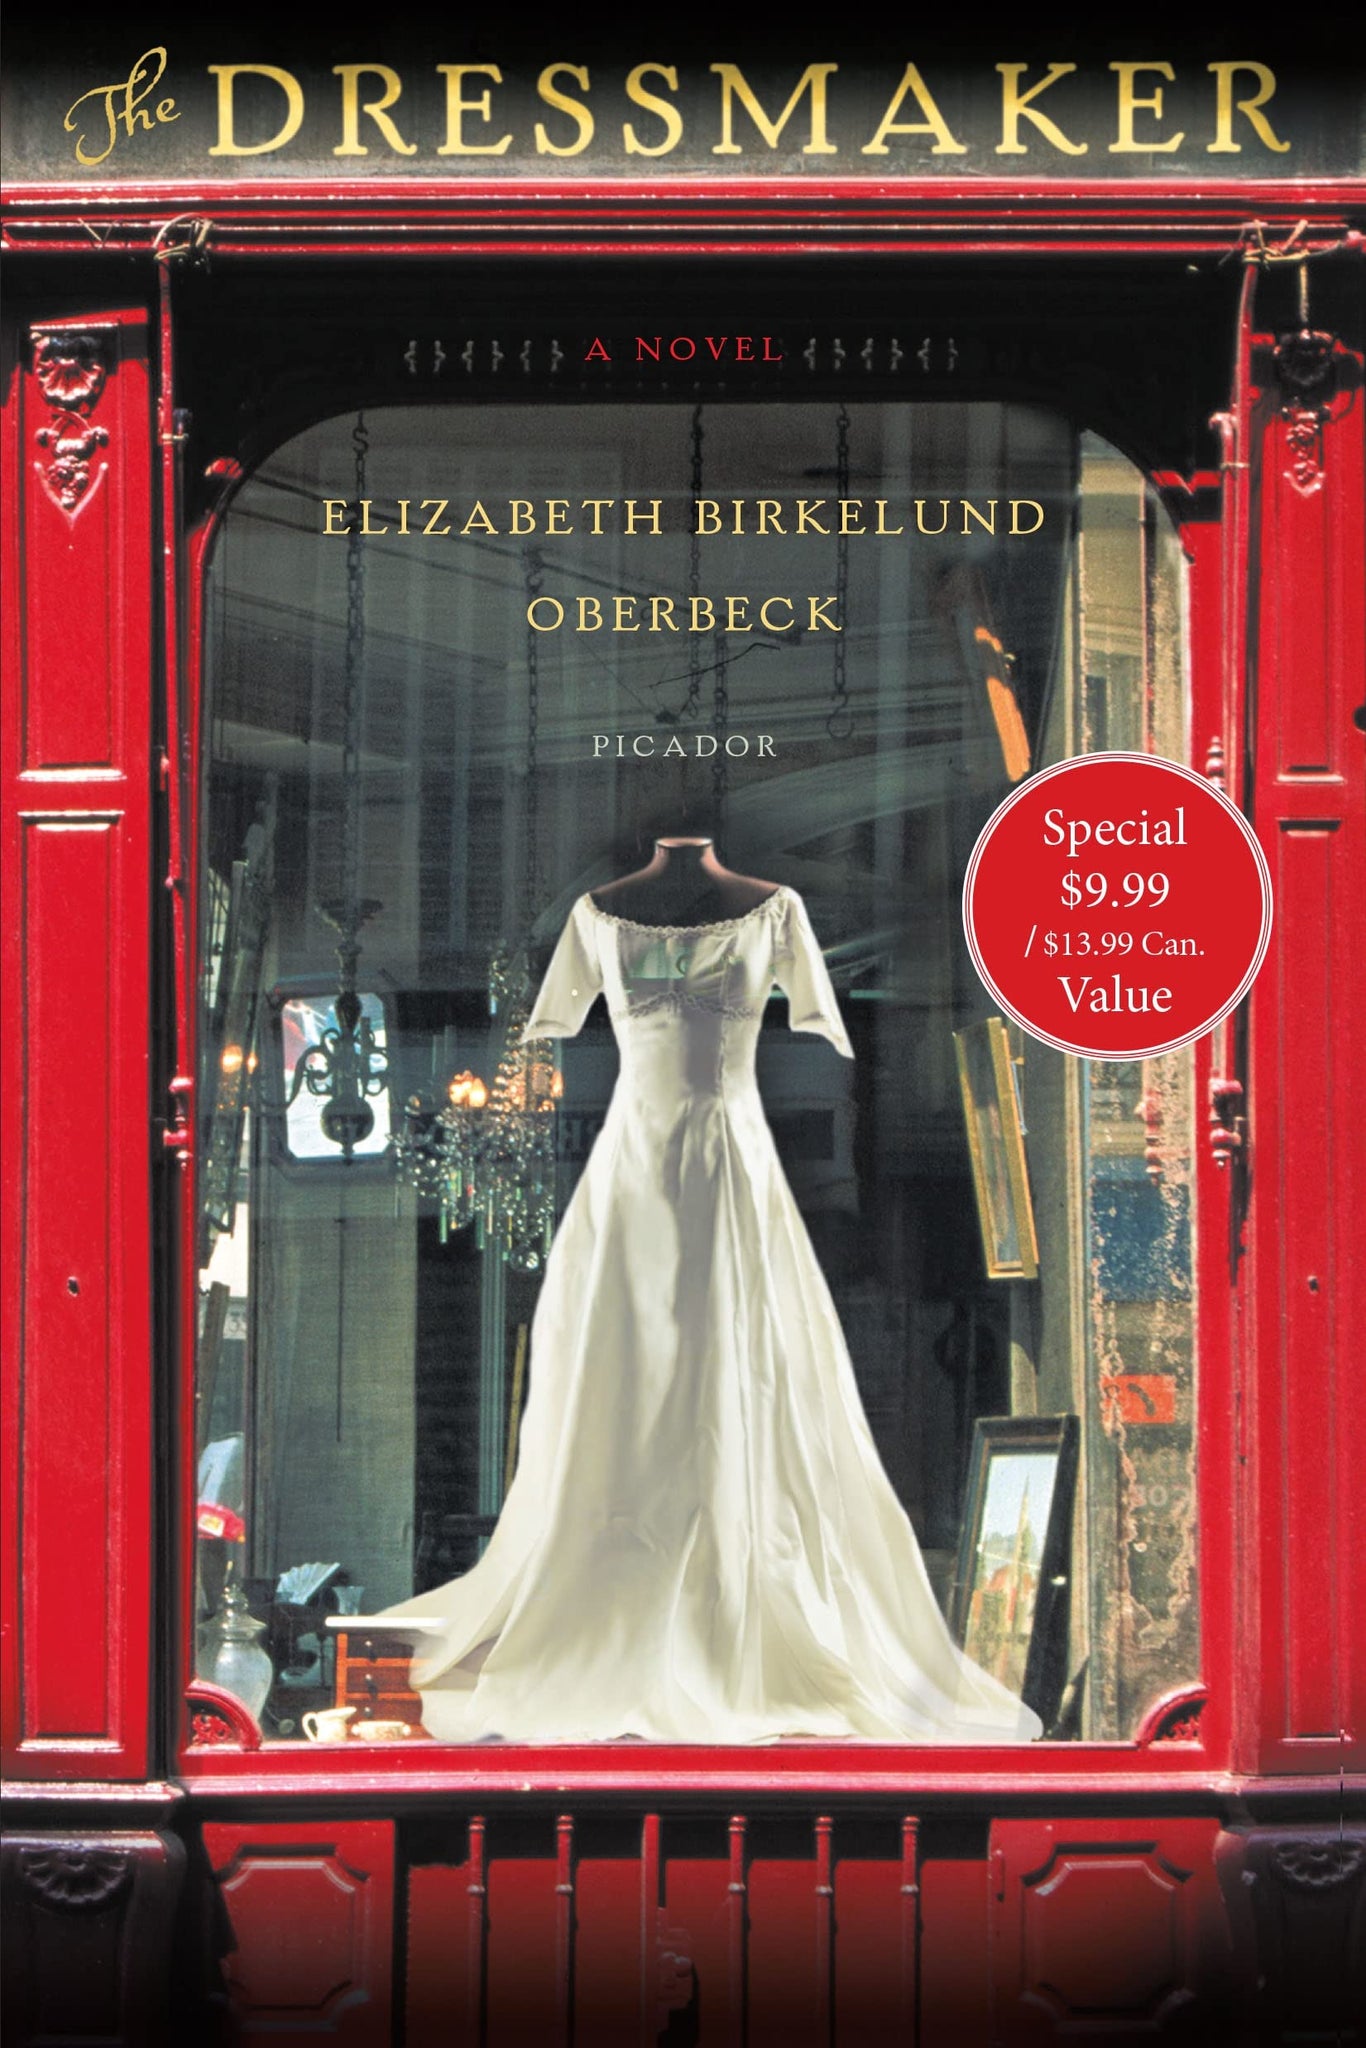 The Dressmaker - Elizabeth Birkelund Oberbeck